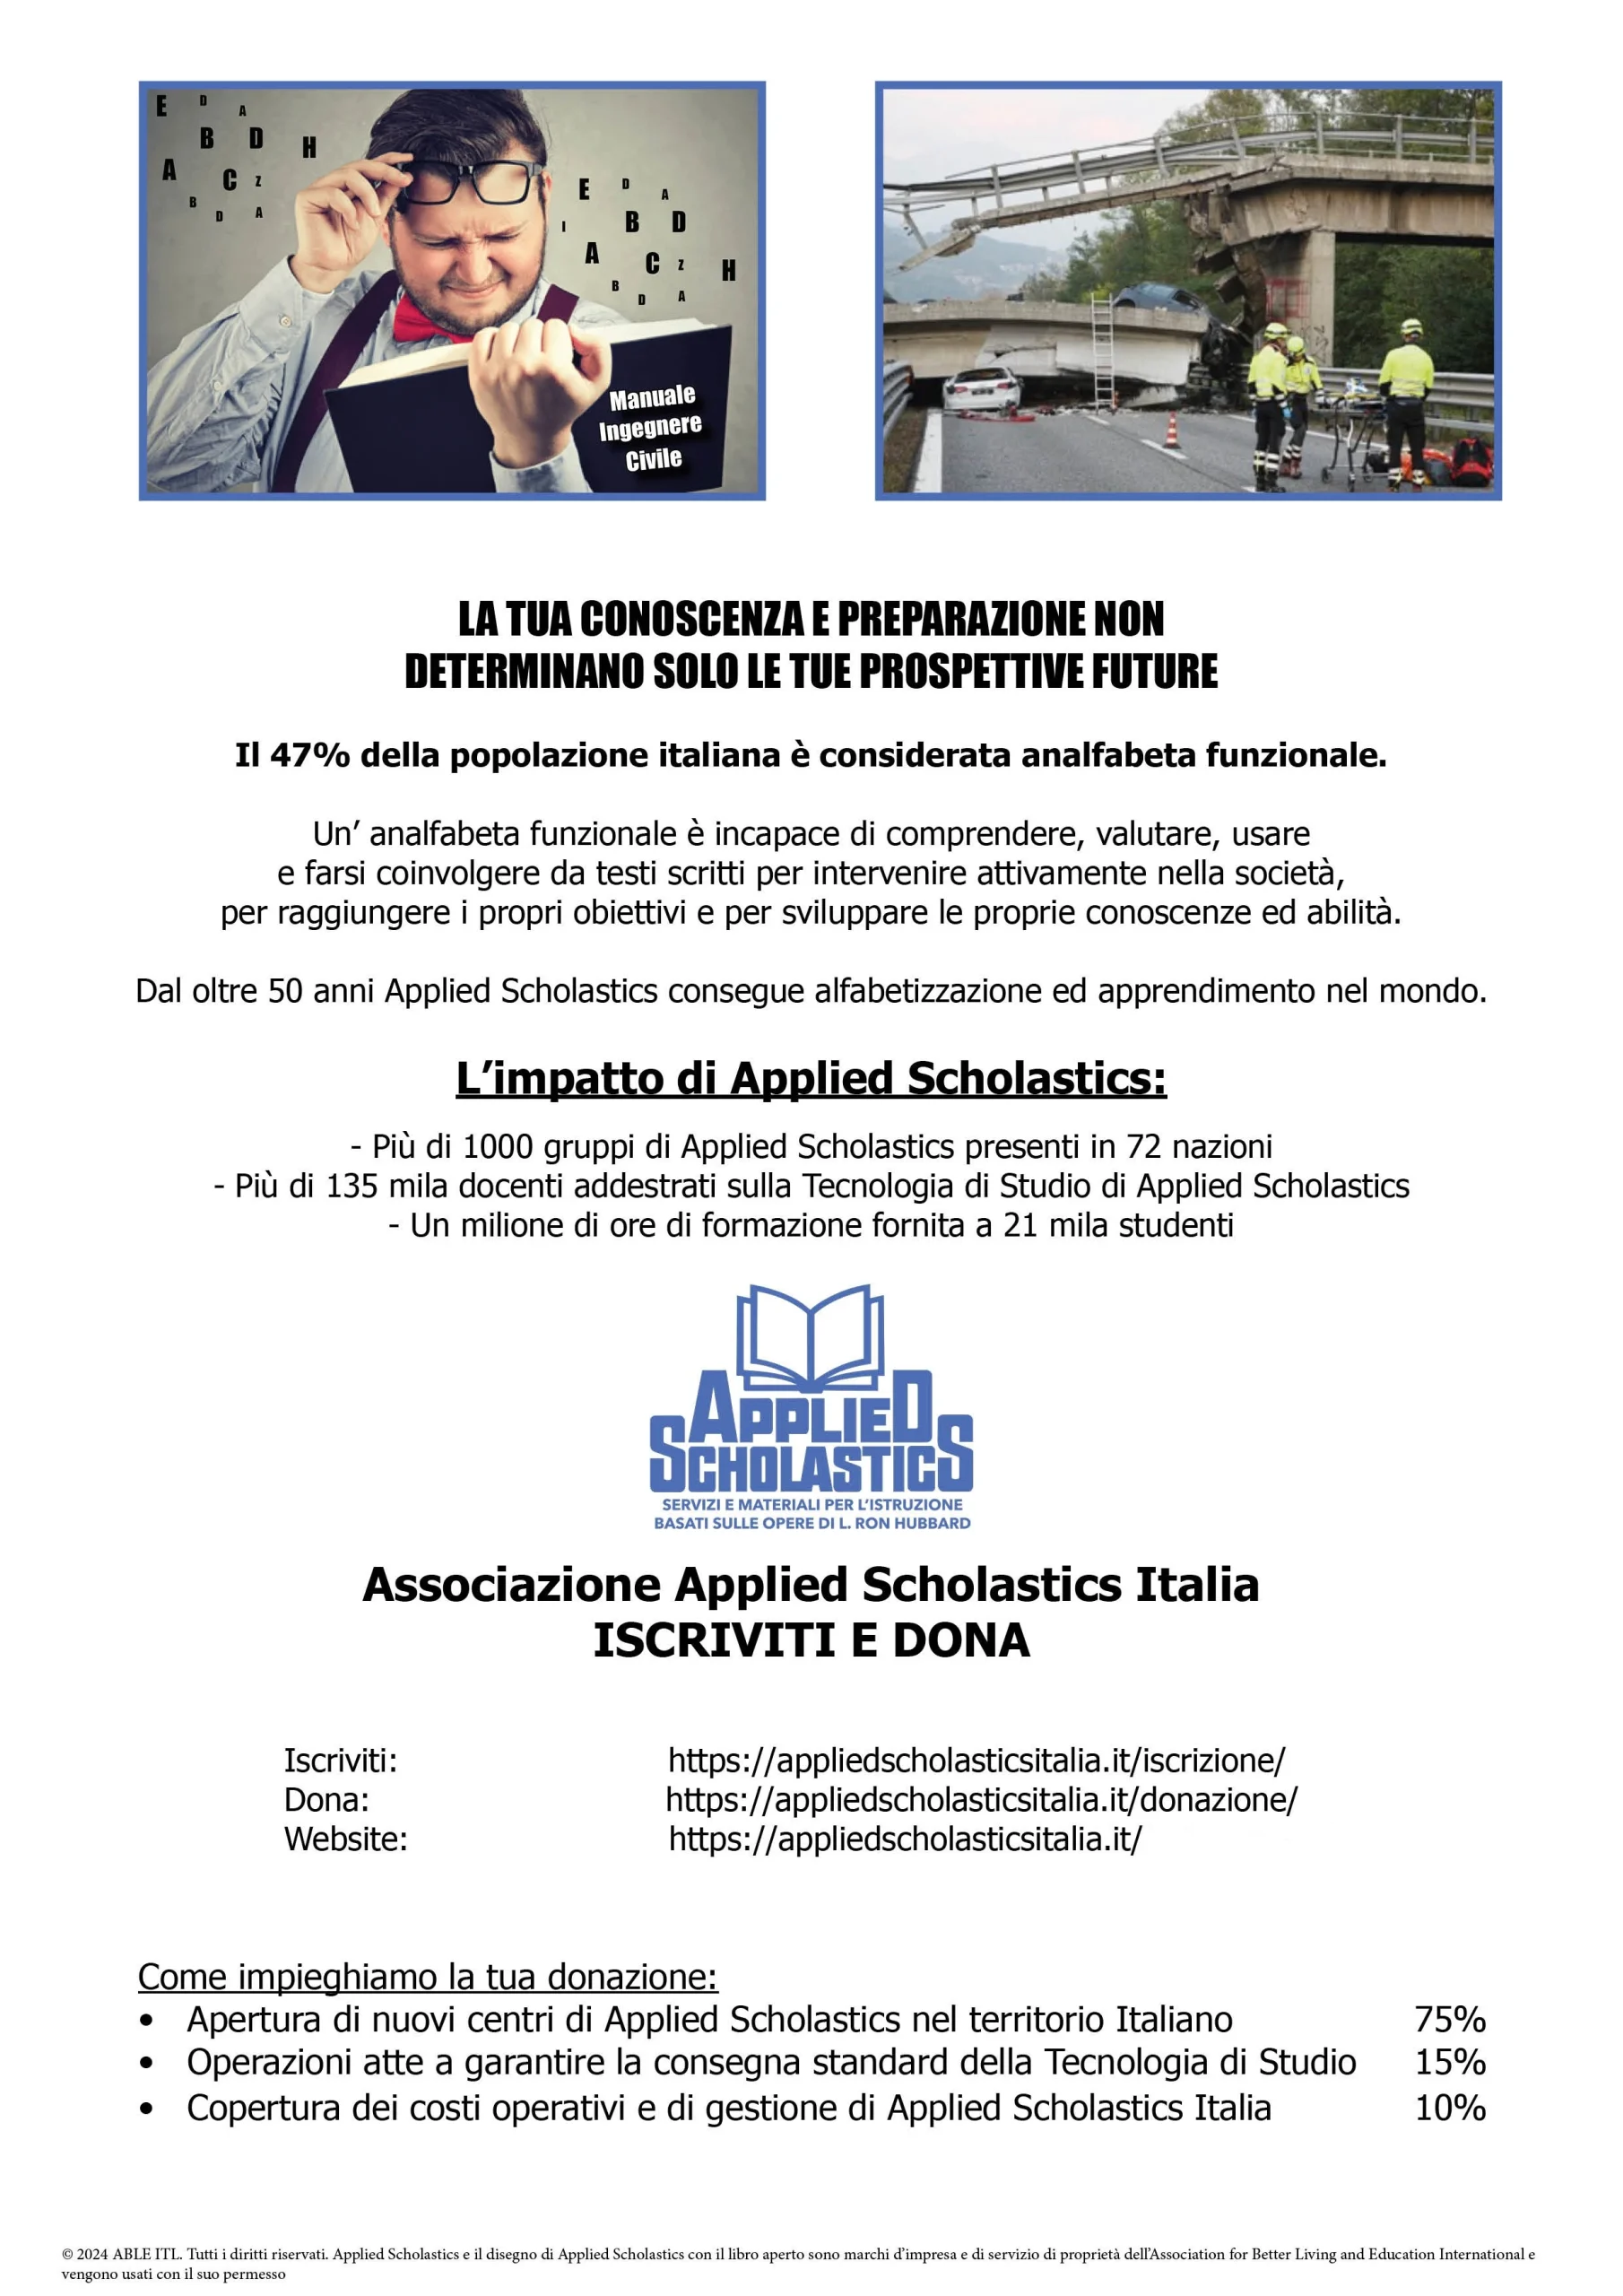 Applied Scholastics Italia pubblicita progresso